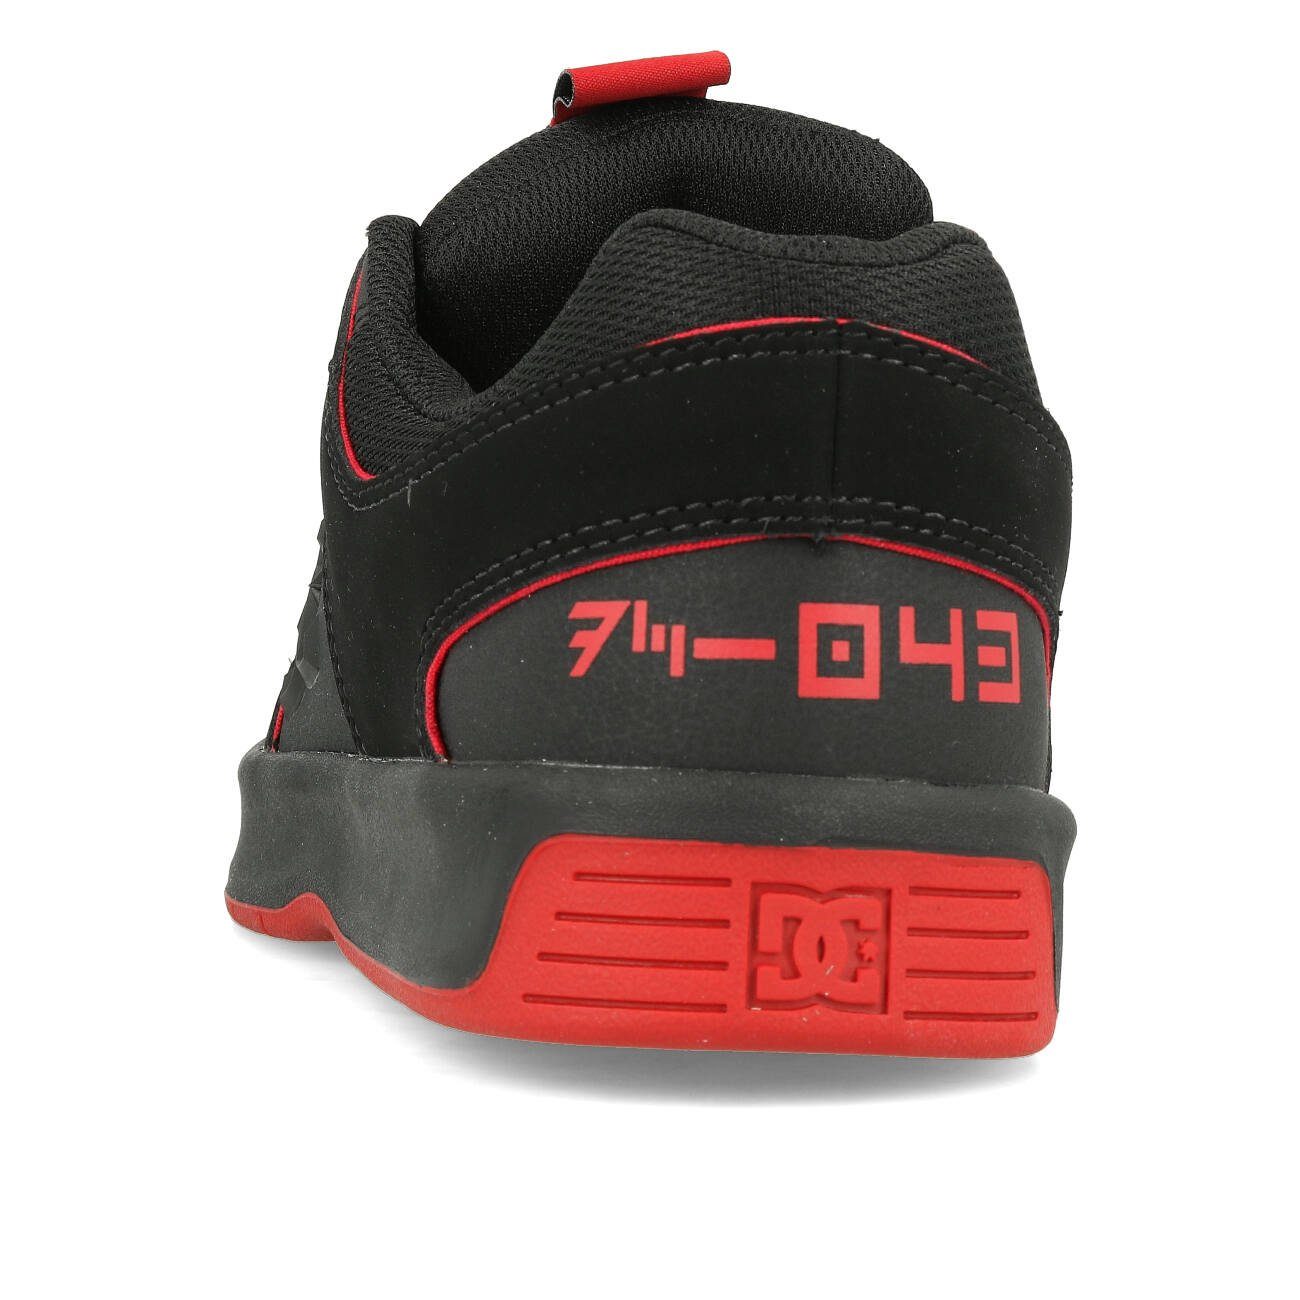 Lynx Star Zero Sneaker Shoes x Red Black DC Black Wars DC